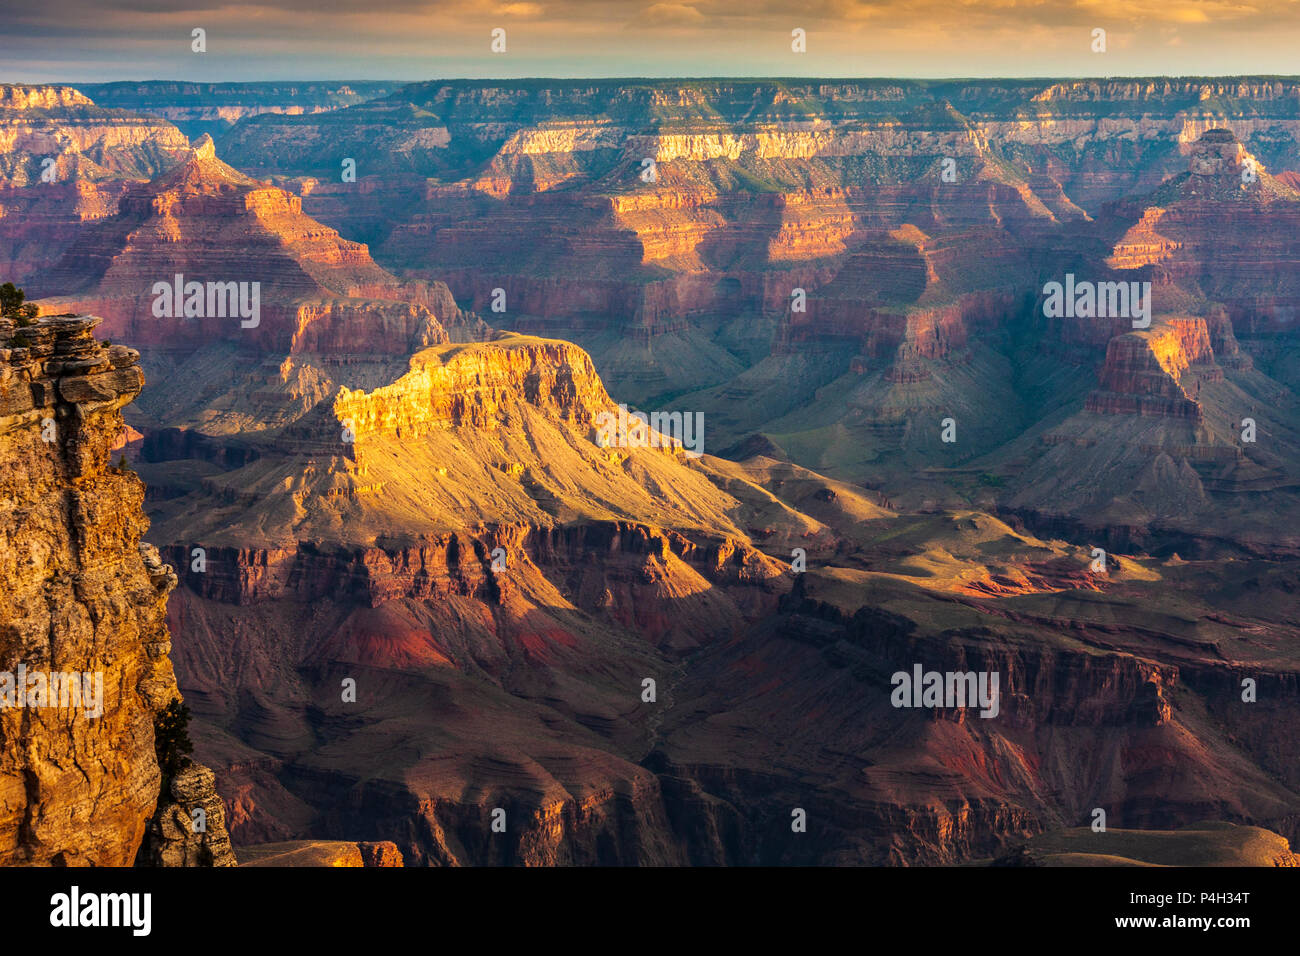 Amanecer en el borde sur del Parque Nacional del Gran Cañón en Arizona. El Gran Cañón es una maravilla geológica, con capas de roca como "ventanas en el tiempo" Foto de stock